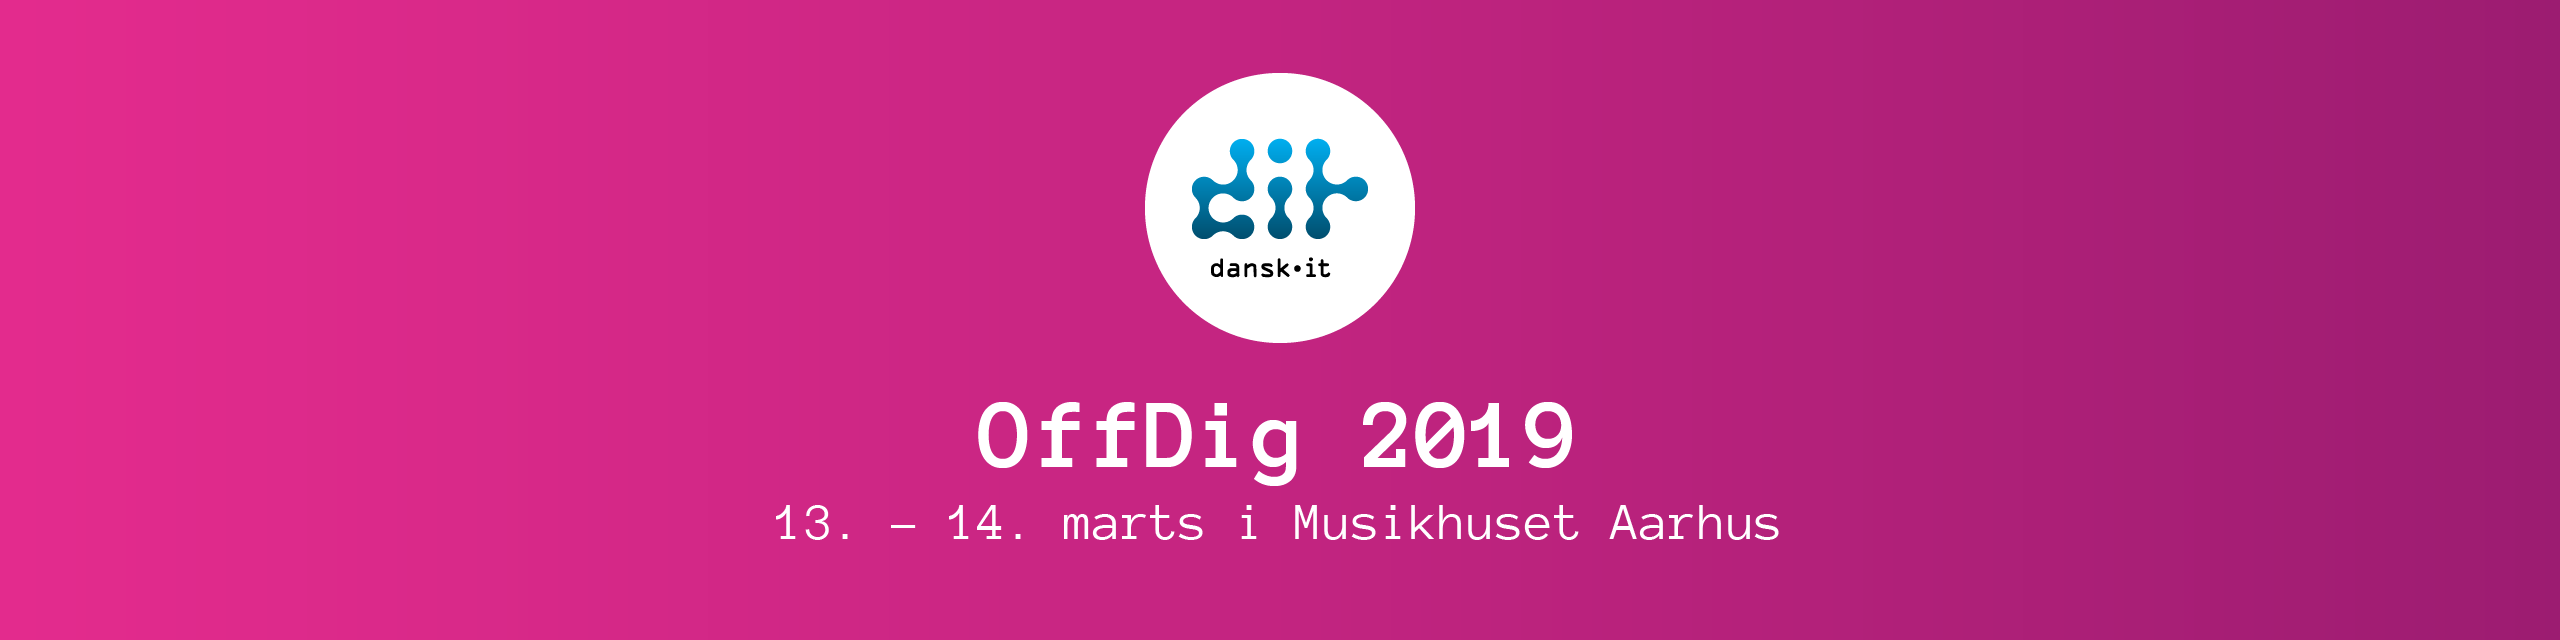 OffDig 2019